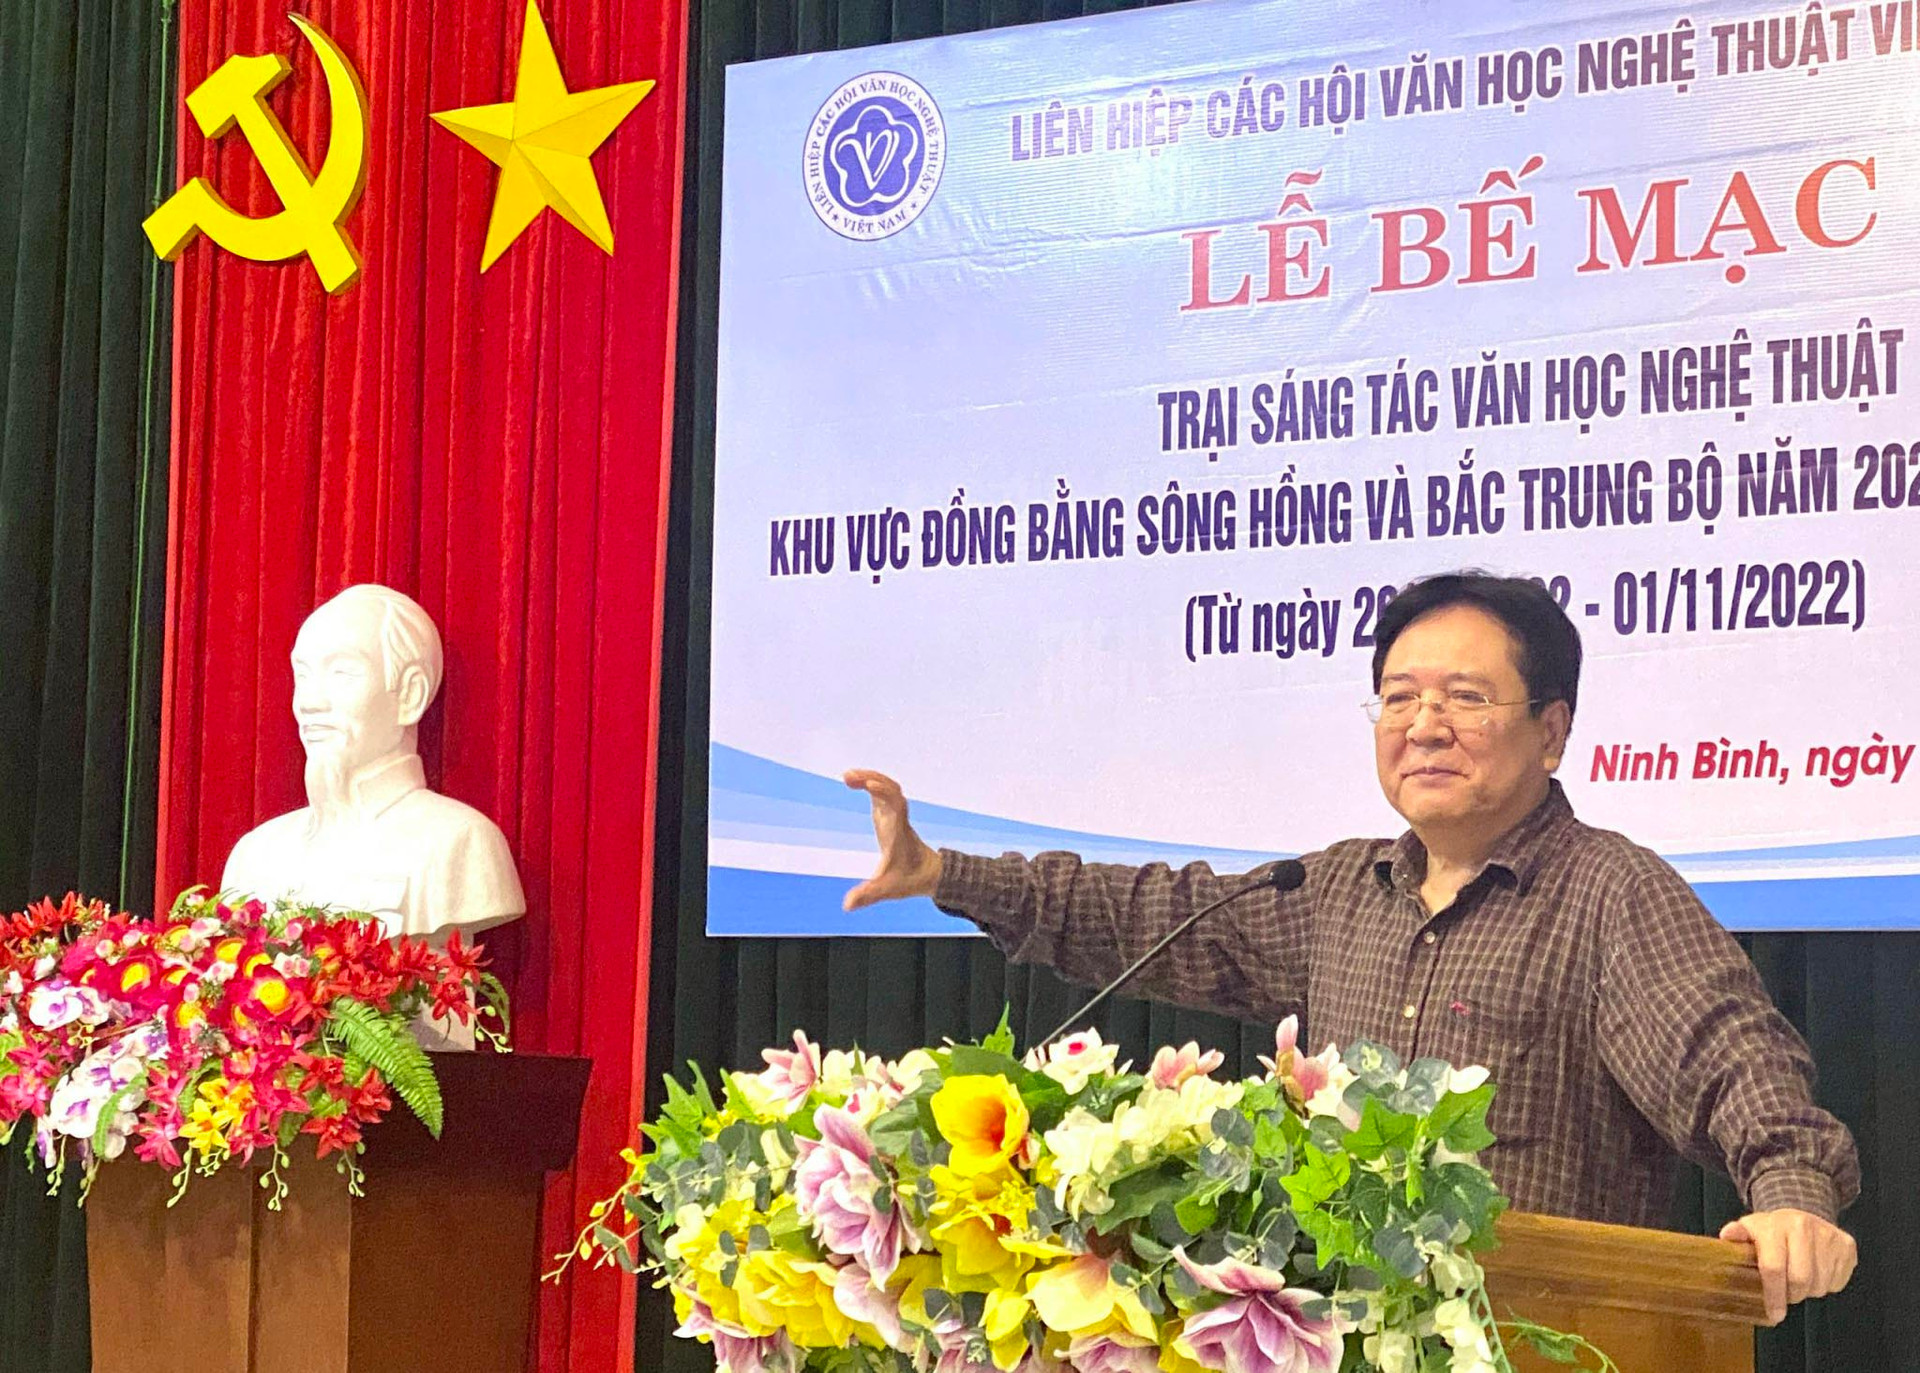 Liên hiệp các Hội Văn học Nghệ thuật Việt Nam
Bế mạc Trại sáng tác Văn học Nghệ thuật tại Ninh Bình